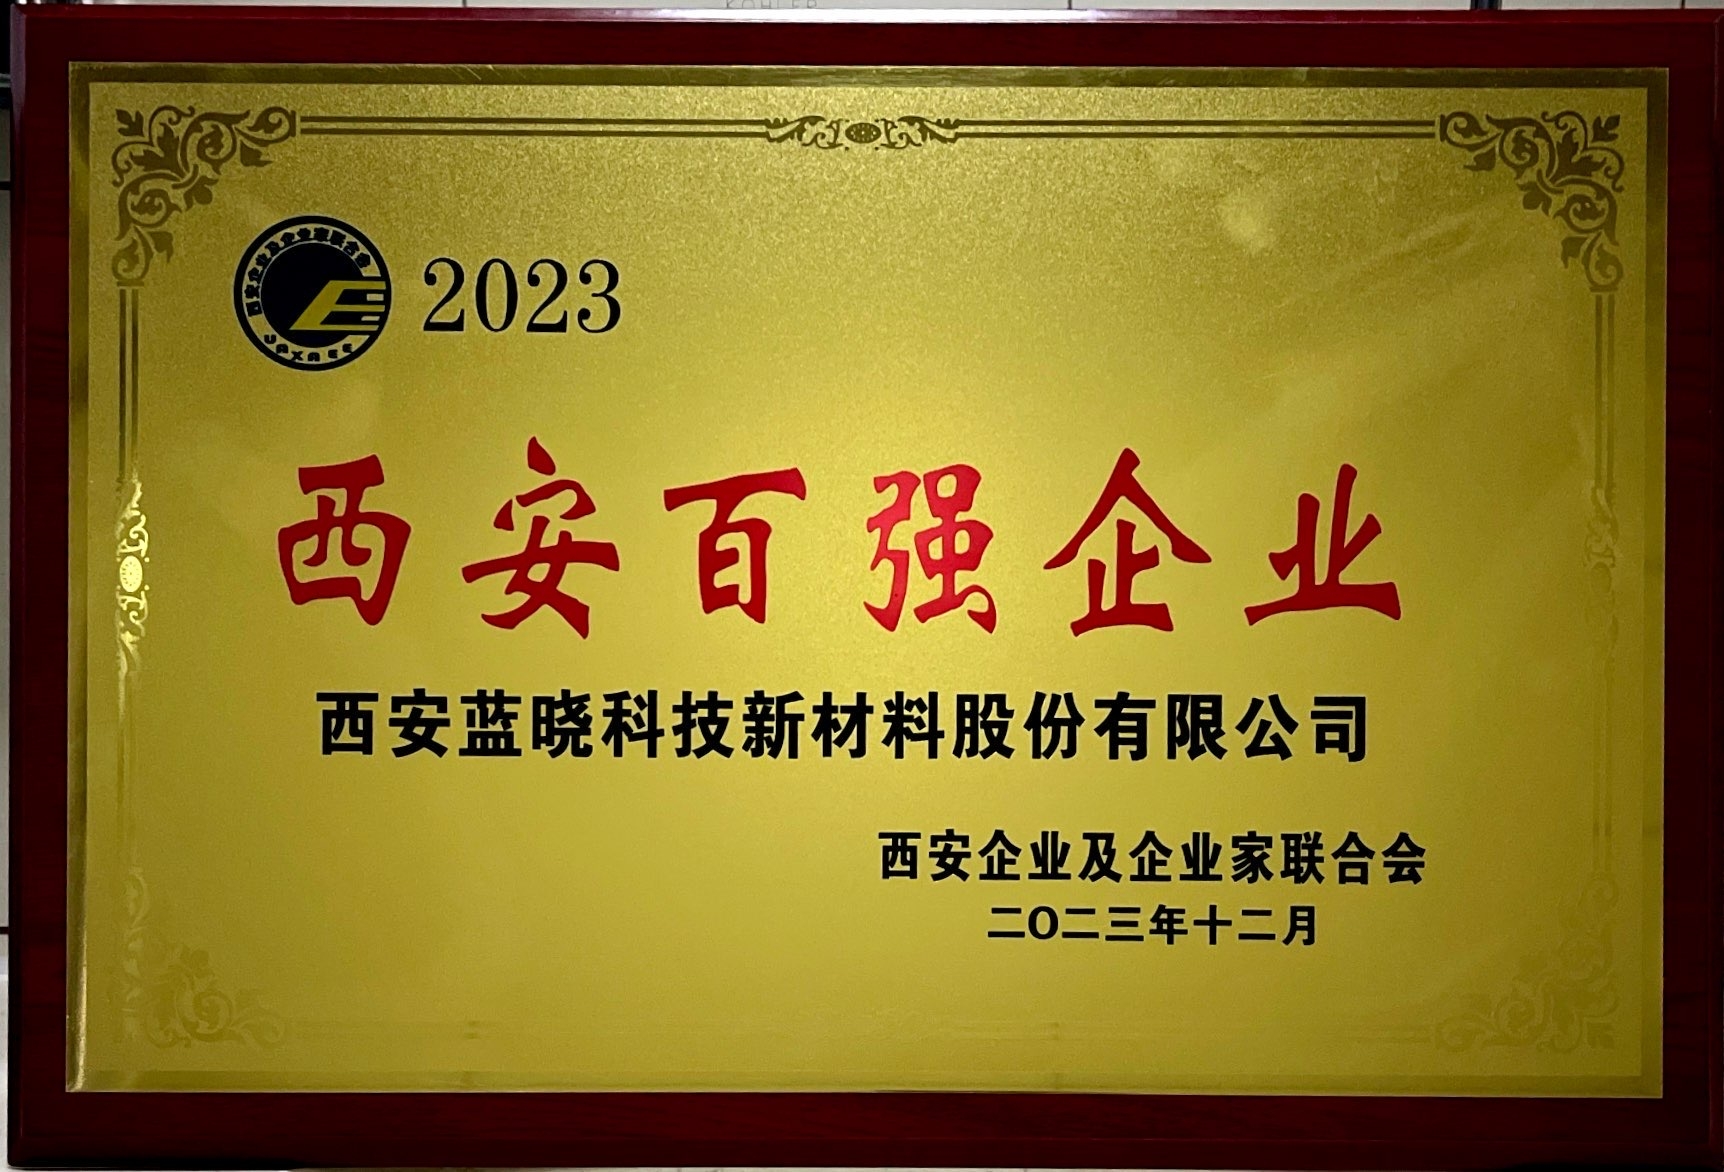 2023年度荣获”西安百强企业“称号